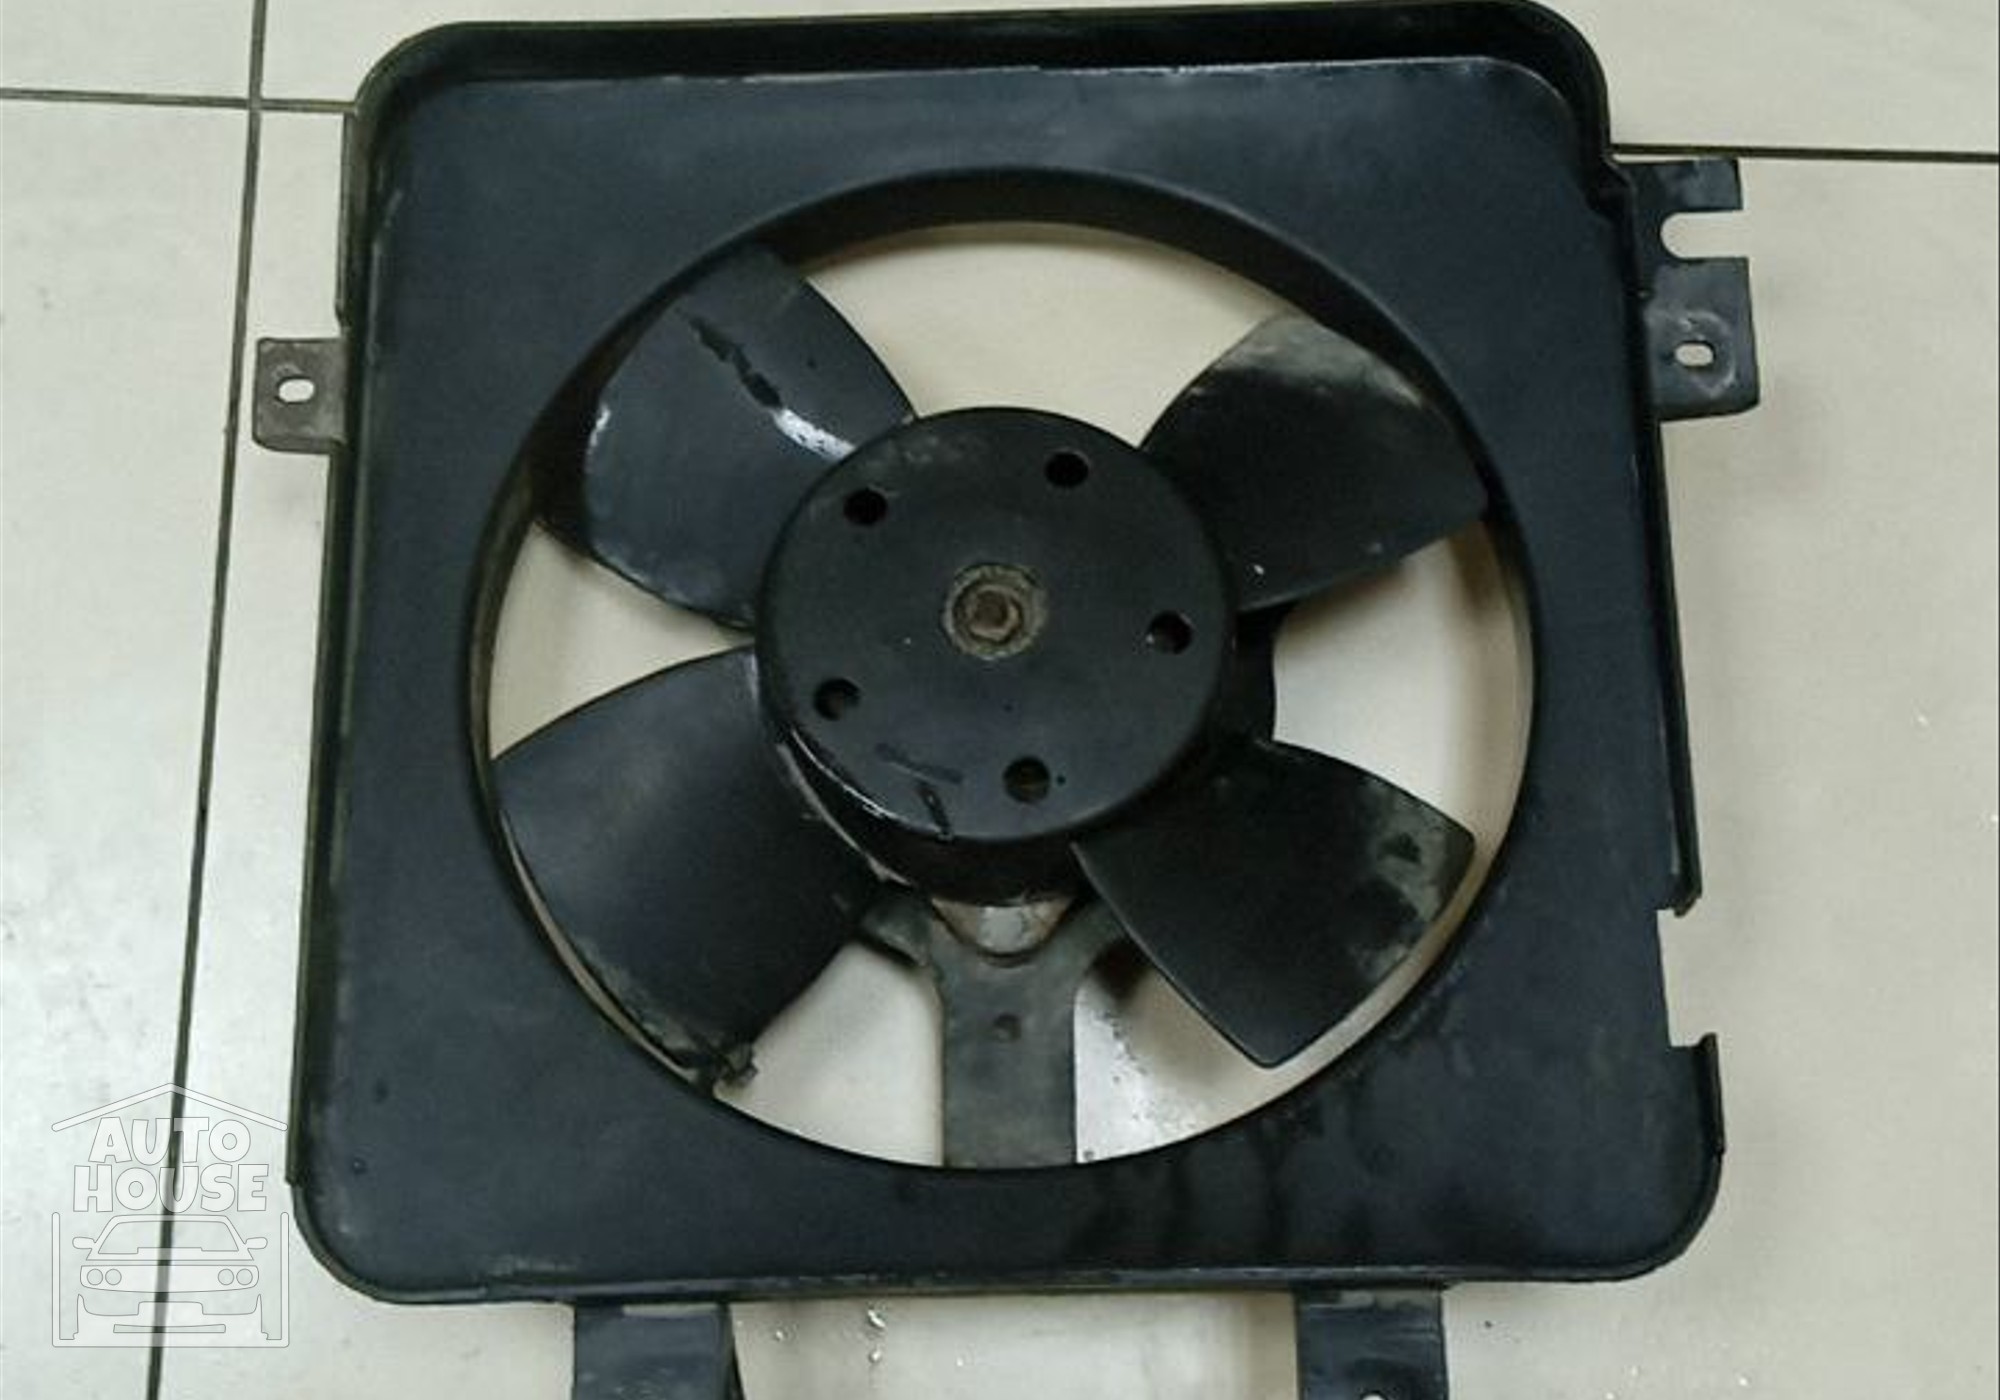 2110130901610 Вентилятор радиатора для Lada Priora